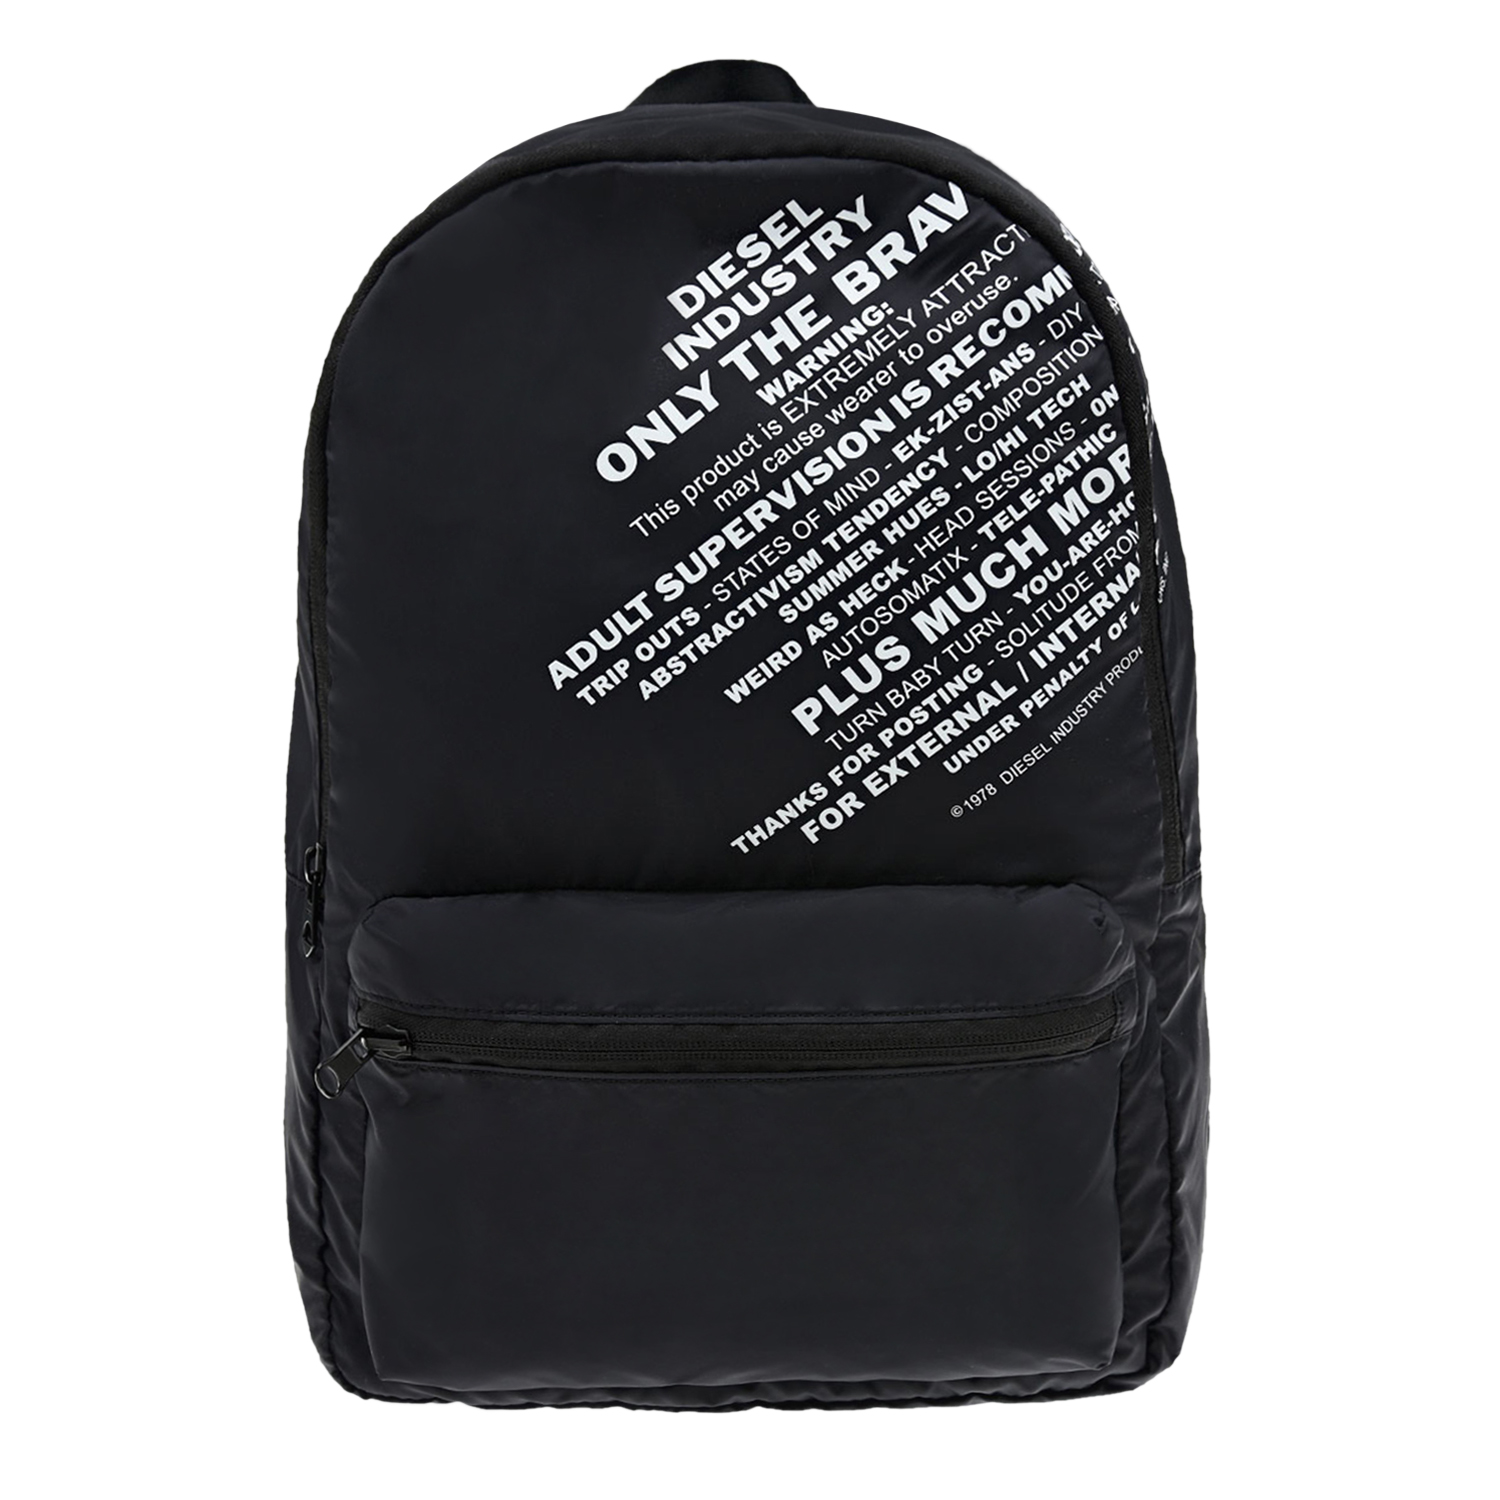 Черный рюкзак с белыми надписями, 37x25x10 см Diesel детский, размер unica